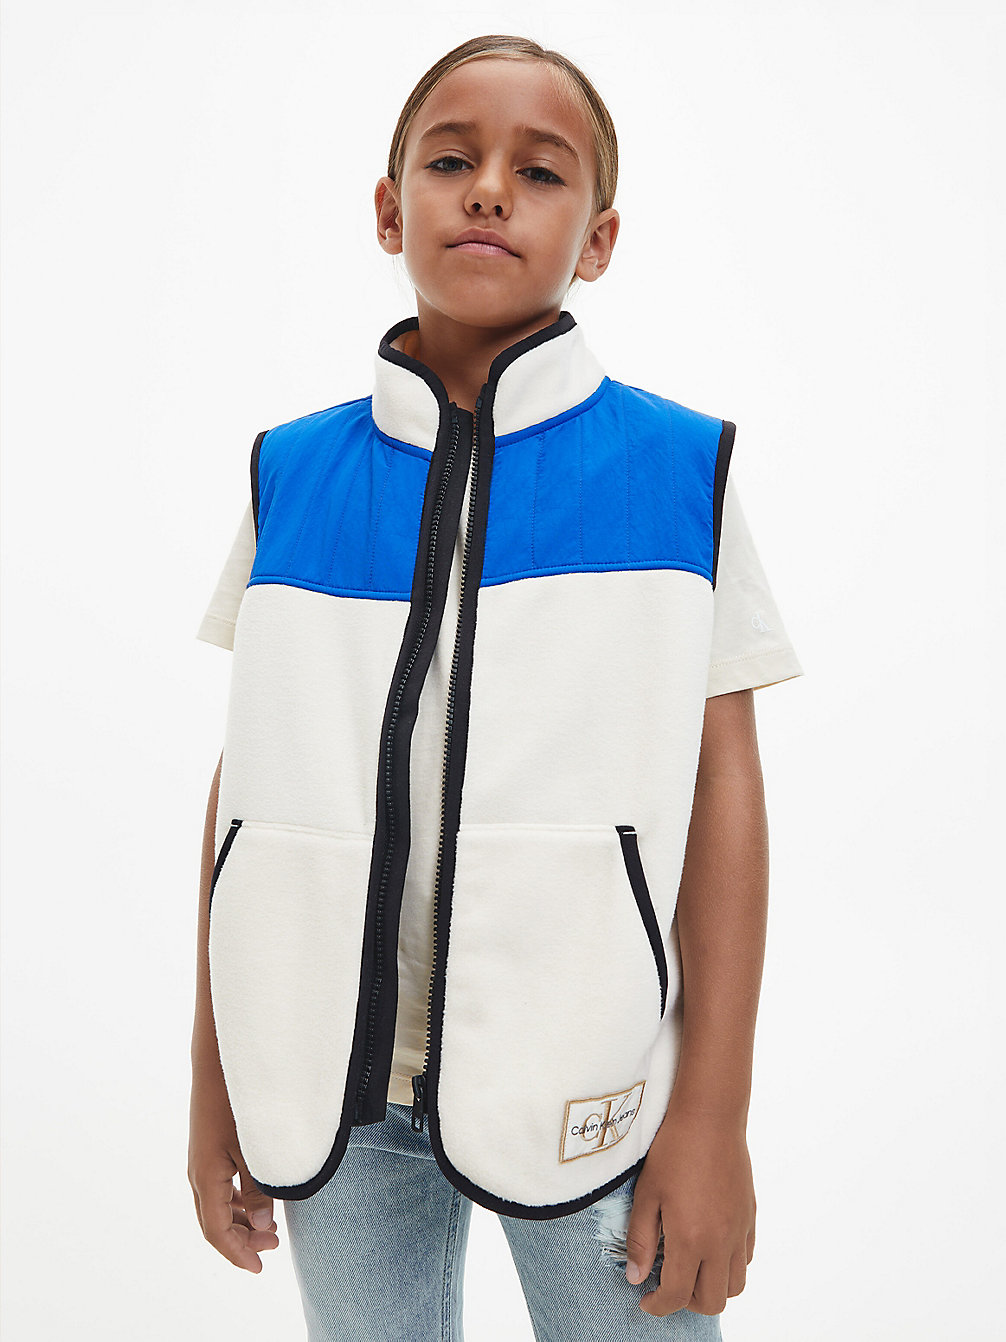 MUSLIN Fleece Colourblock Zipped Gilet undefined boys Calvin Klein